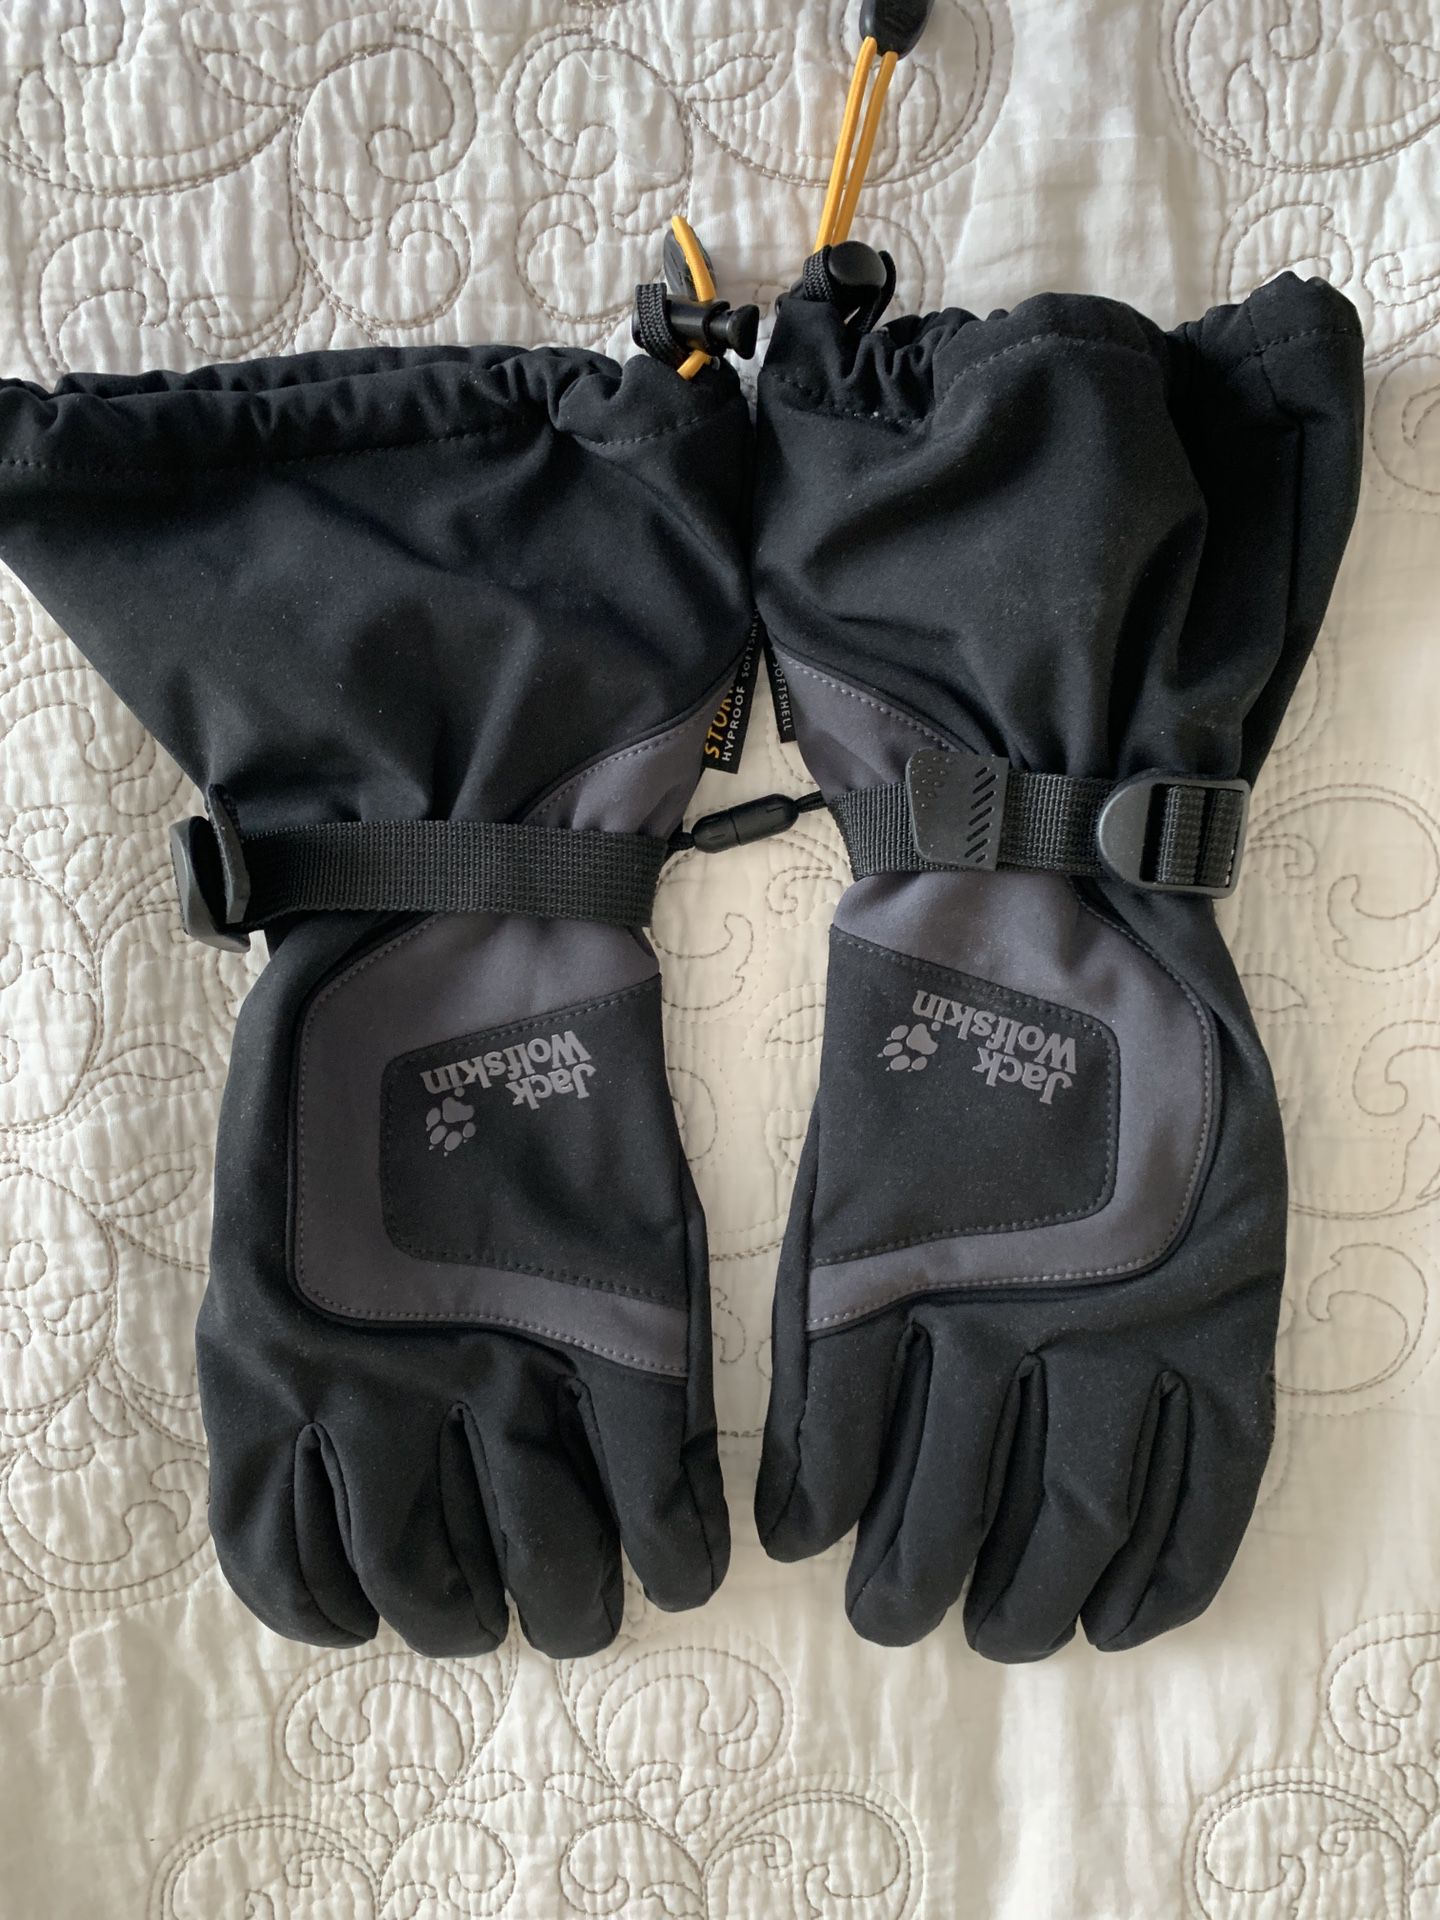 Jack Wolfskin ski snowboard gloves